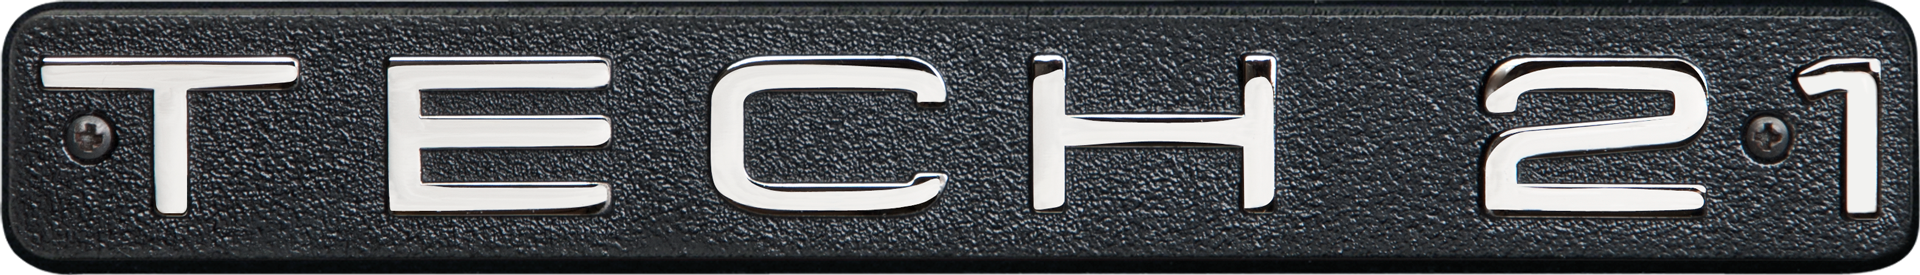 TECH21 - гитарные комбоусилители, педали и процессоры эффектов. Официальный представитель.